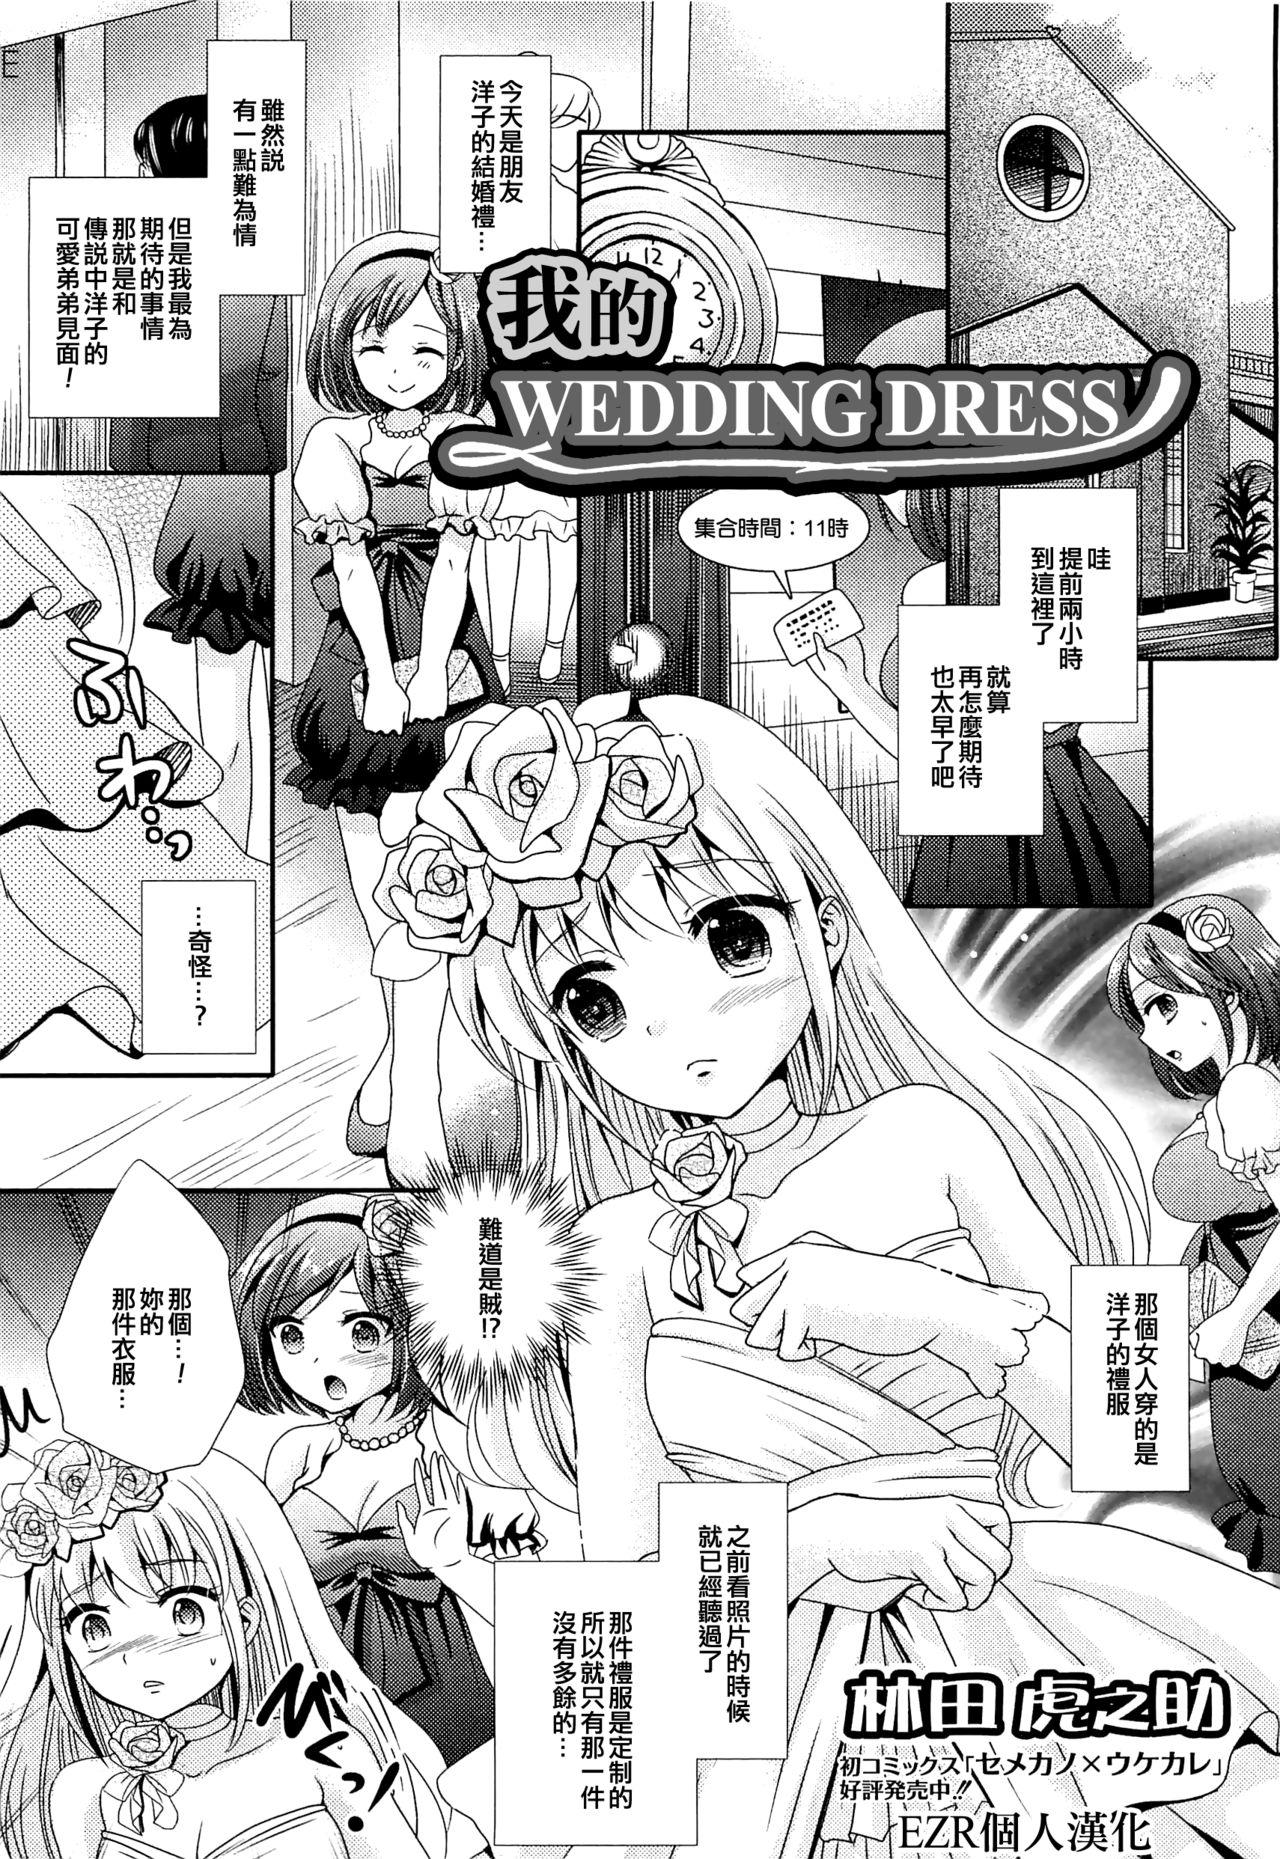 Boku no Wedding Dress 0